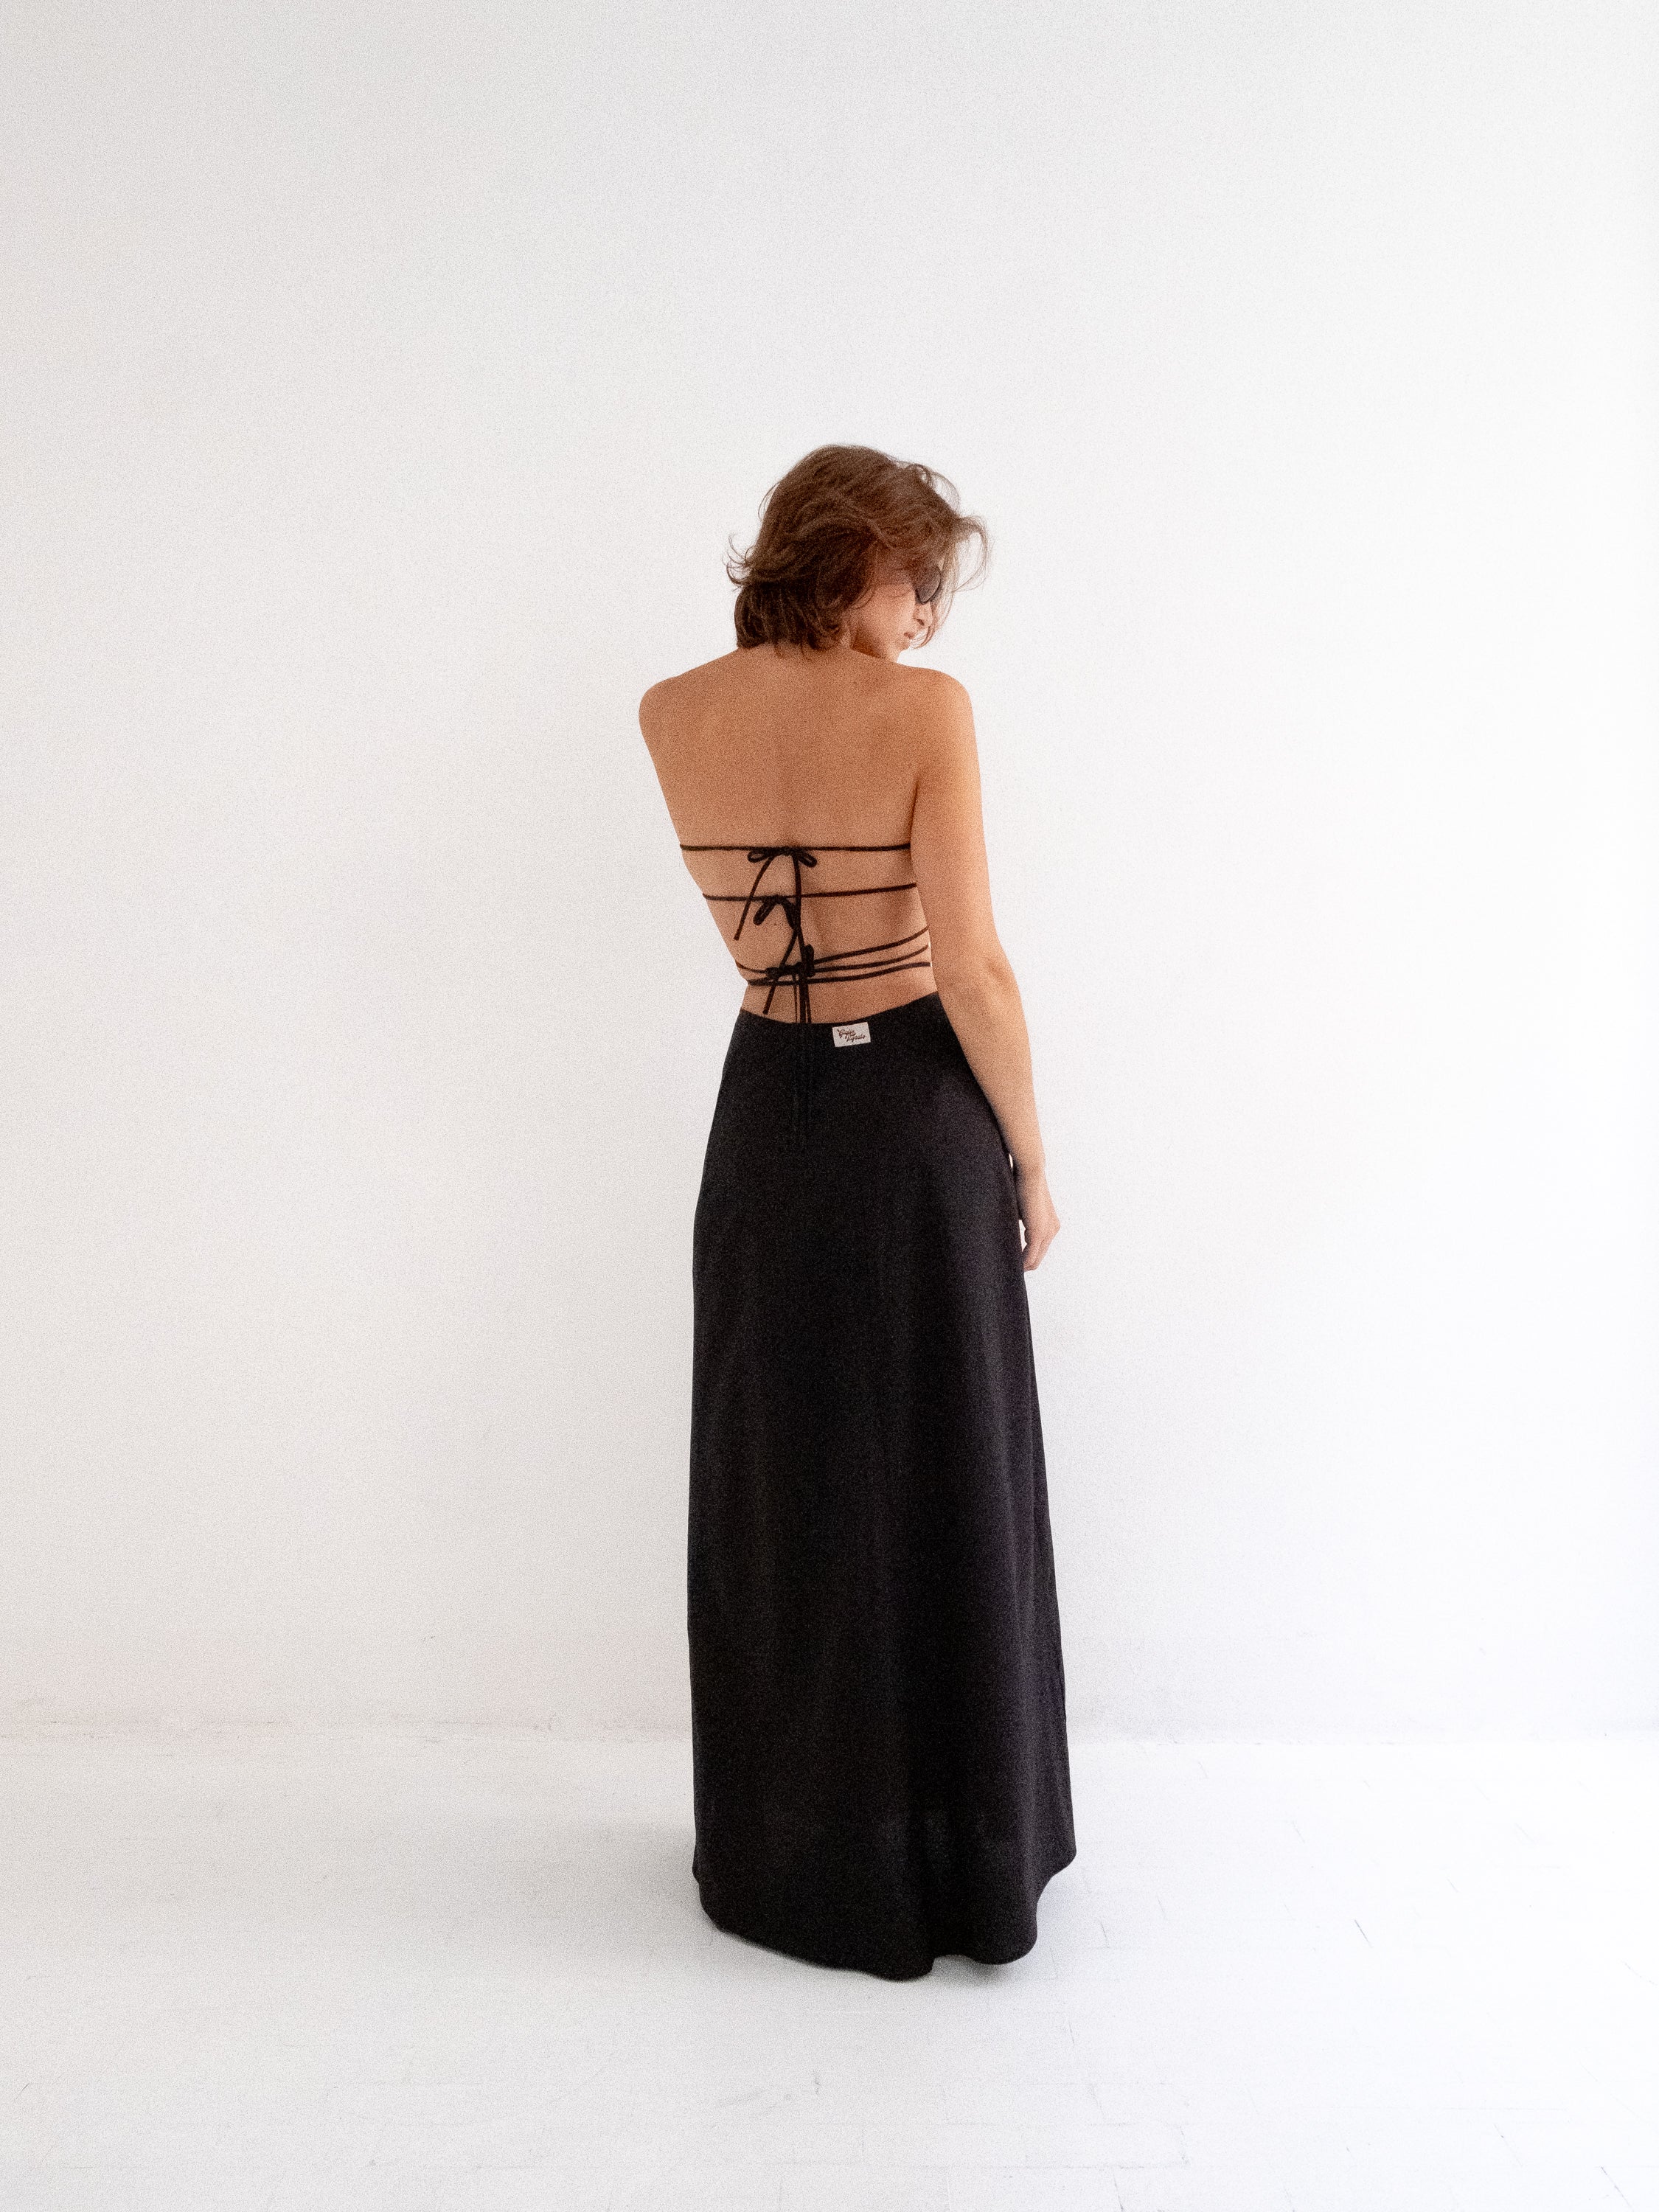 Lilo Long Skirt in Black